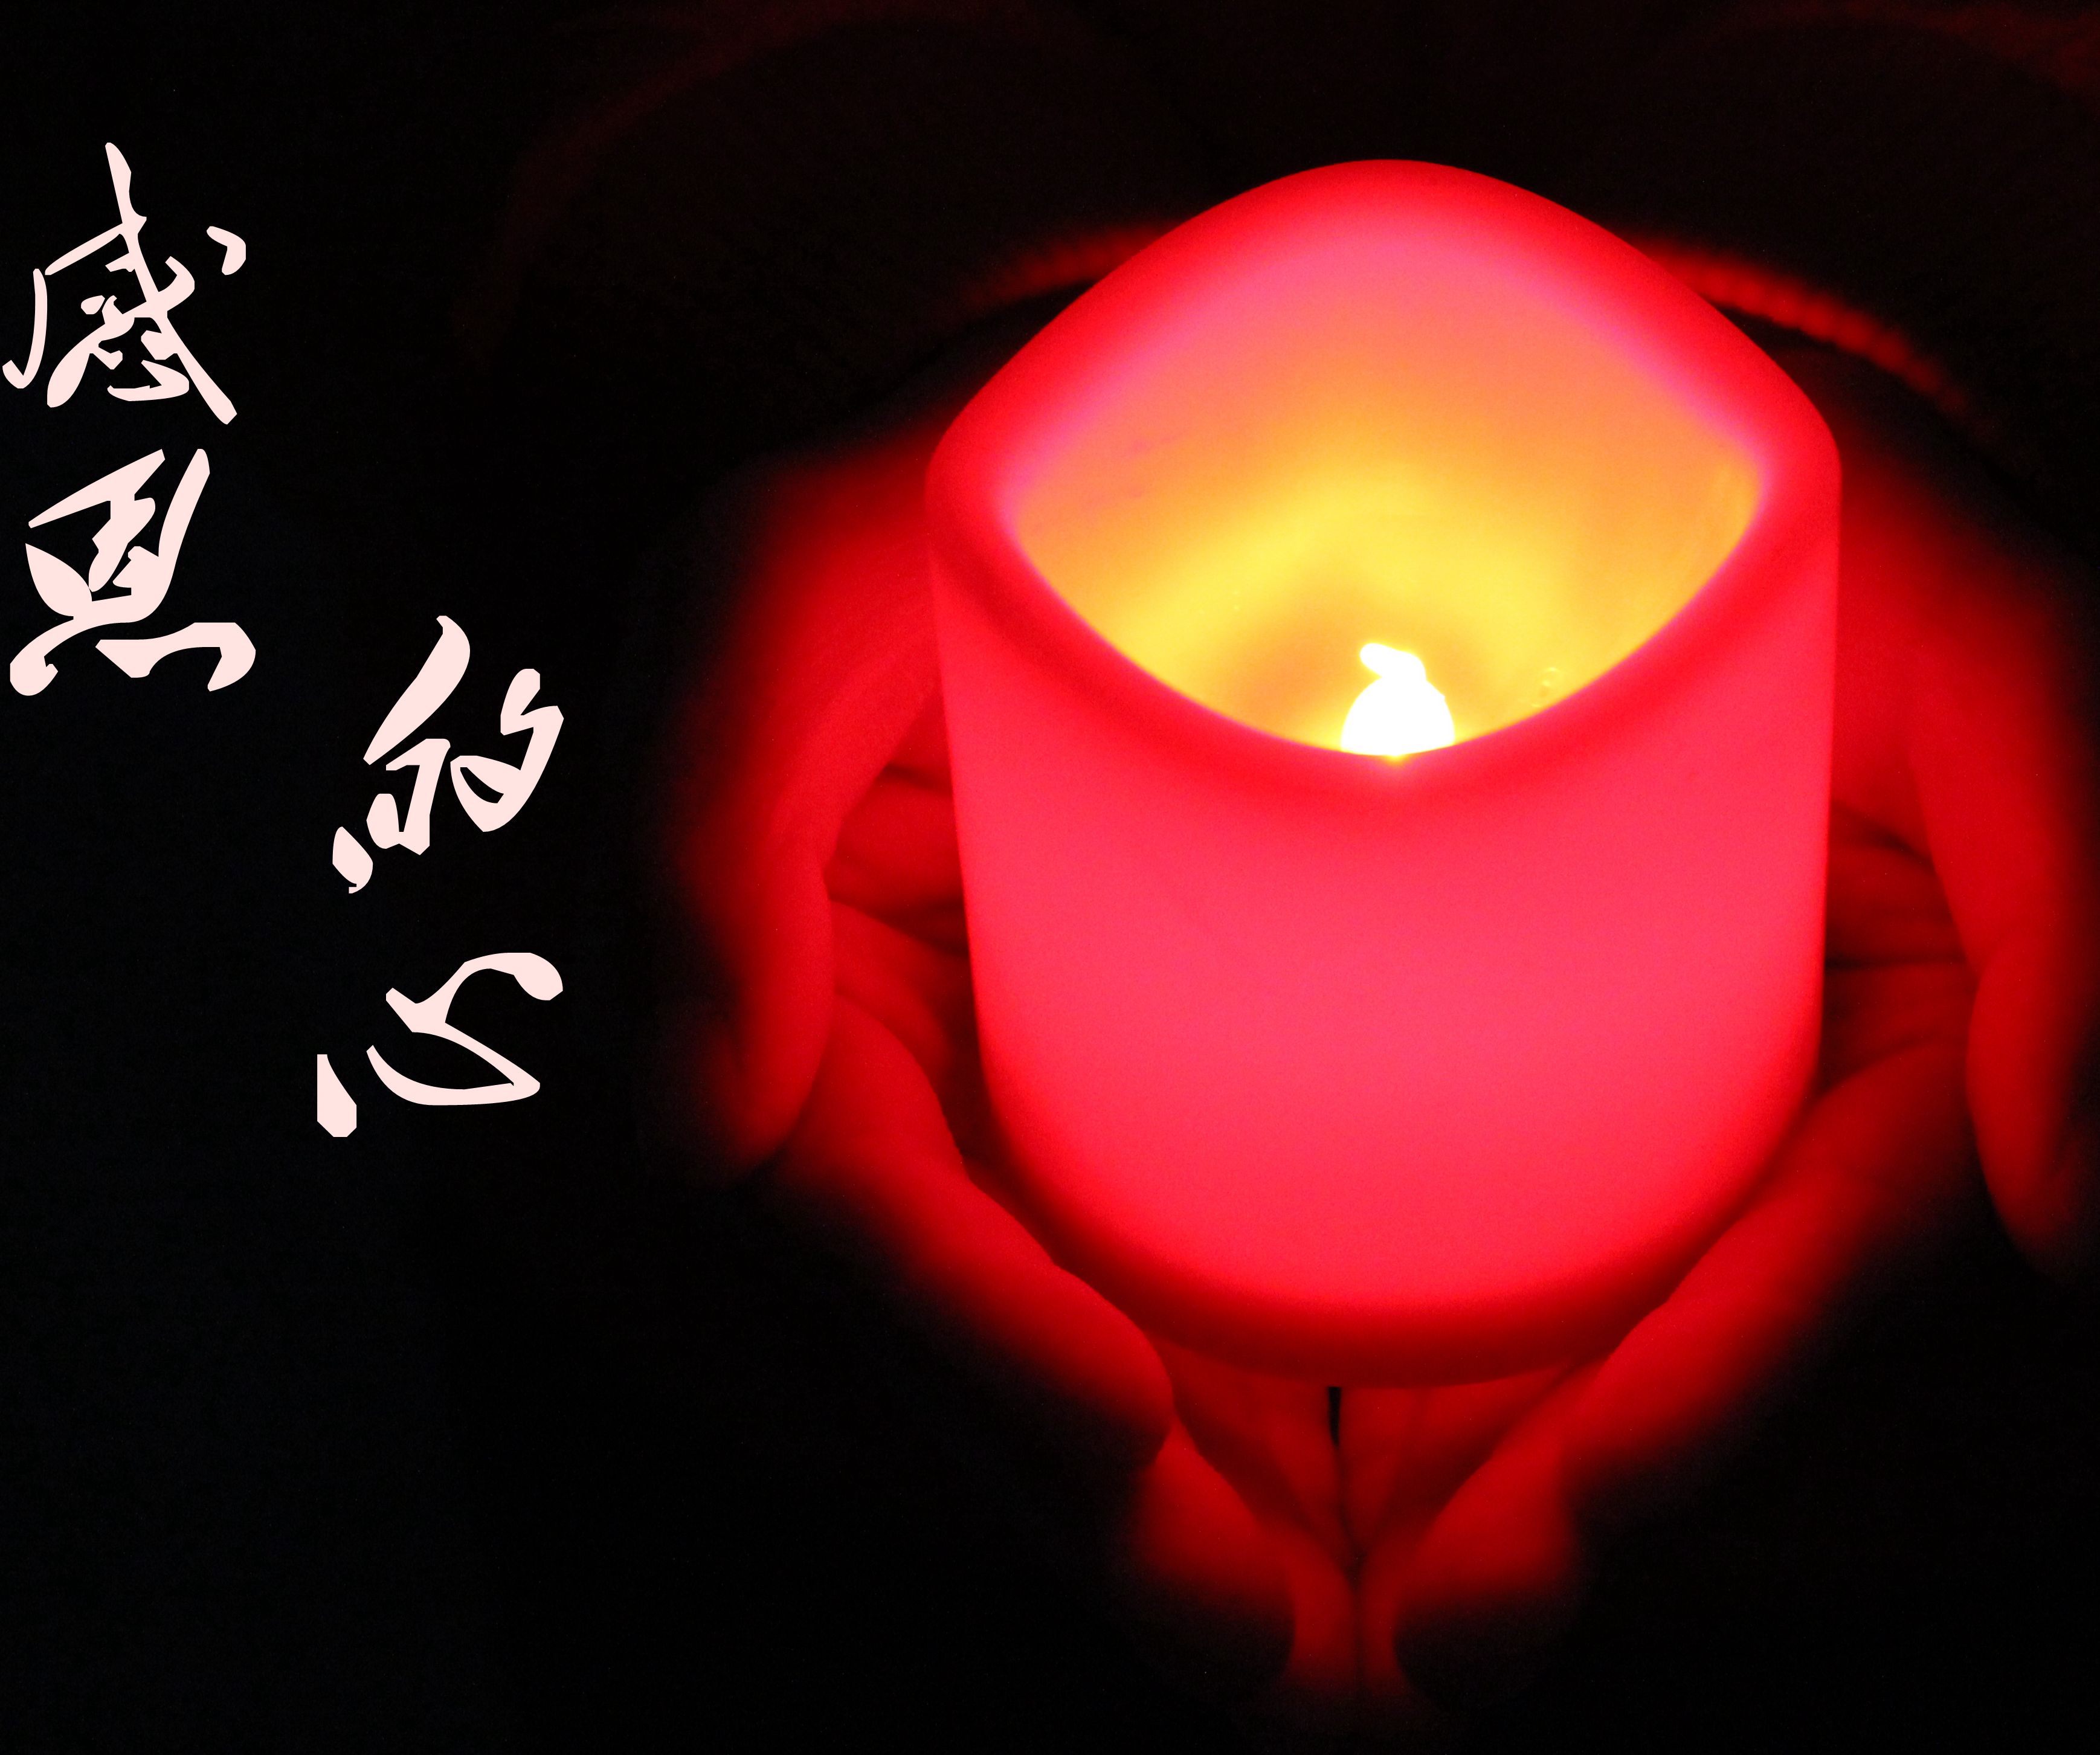 图片素材 : 星, 焰火, 火焰, 黑暗, 圣诞, 灯光, 火花, 红色蜡烛 3731x2848 - - 684619 - 素材中国, 高清 ...